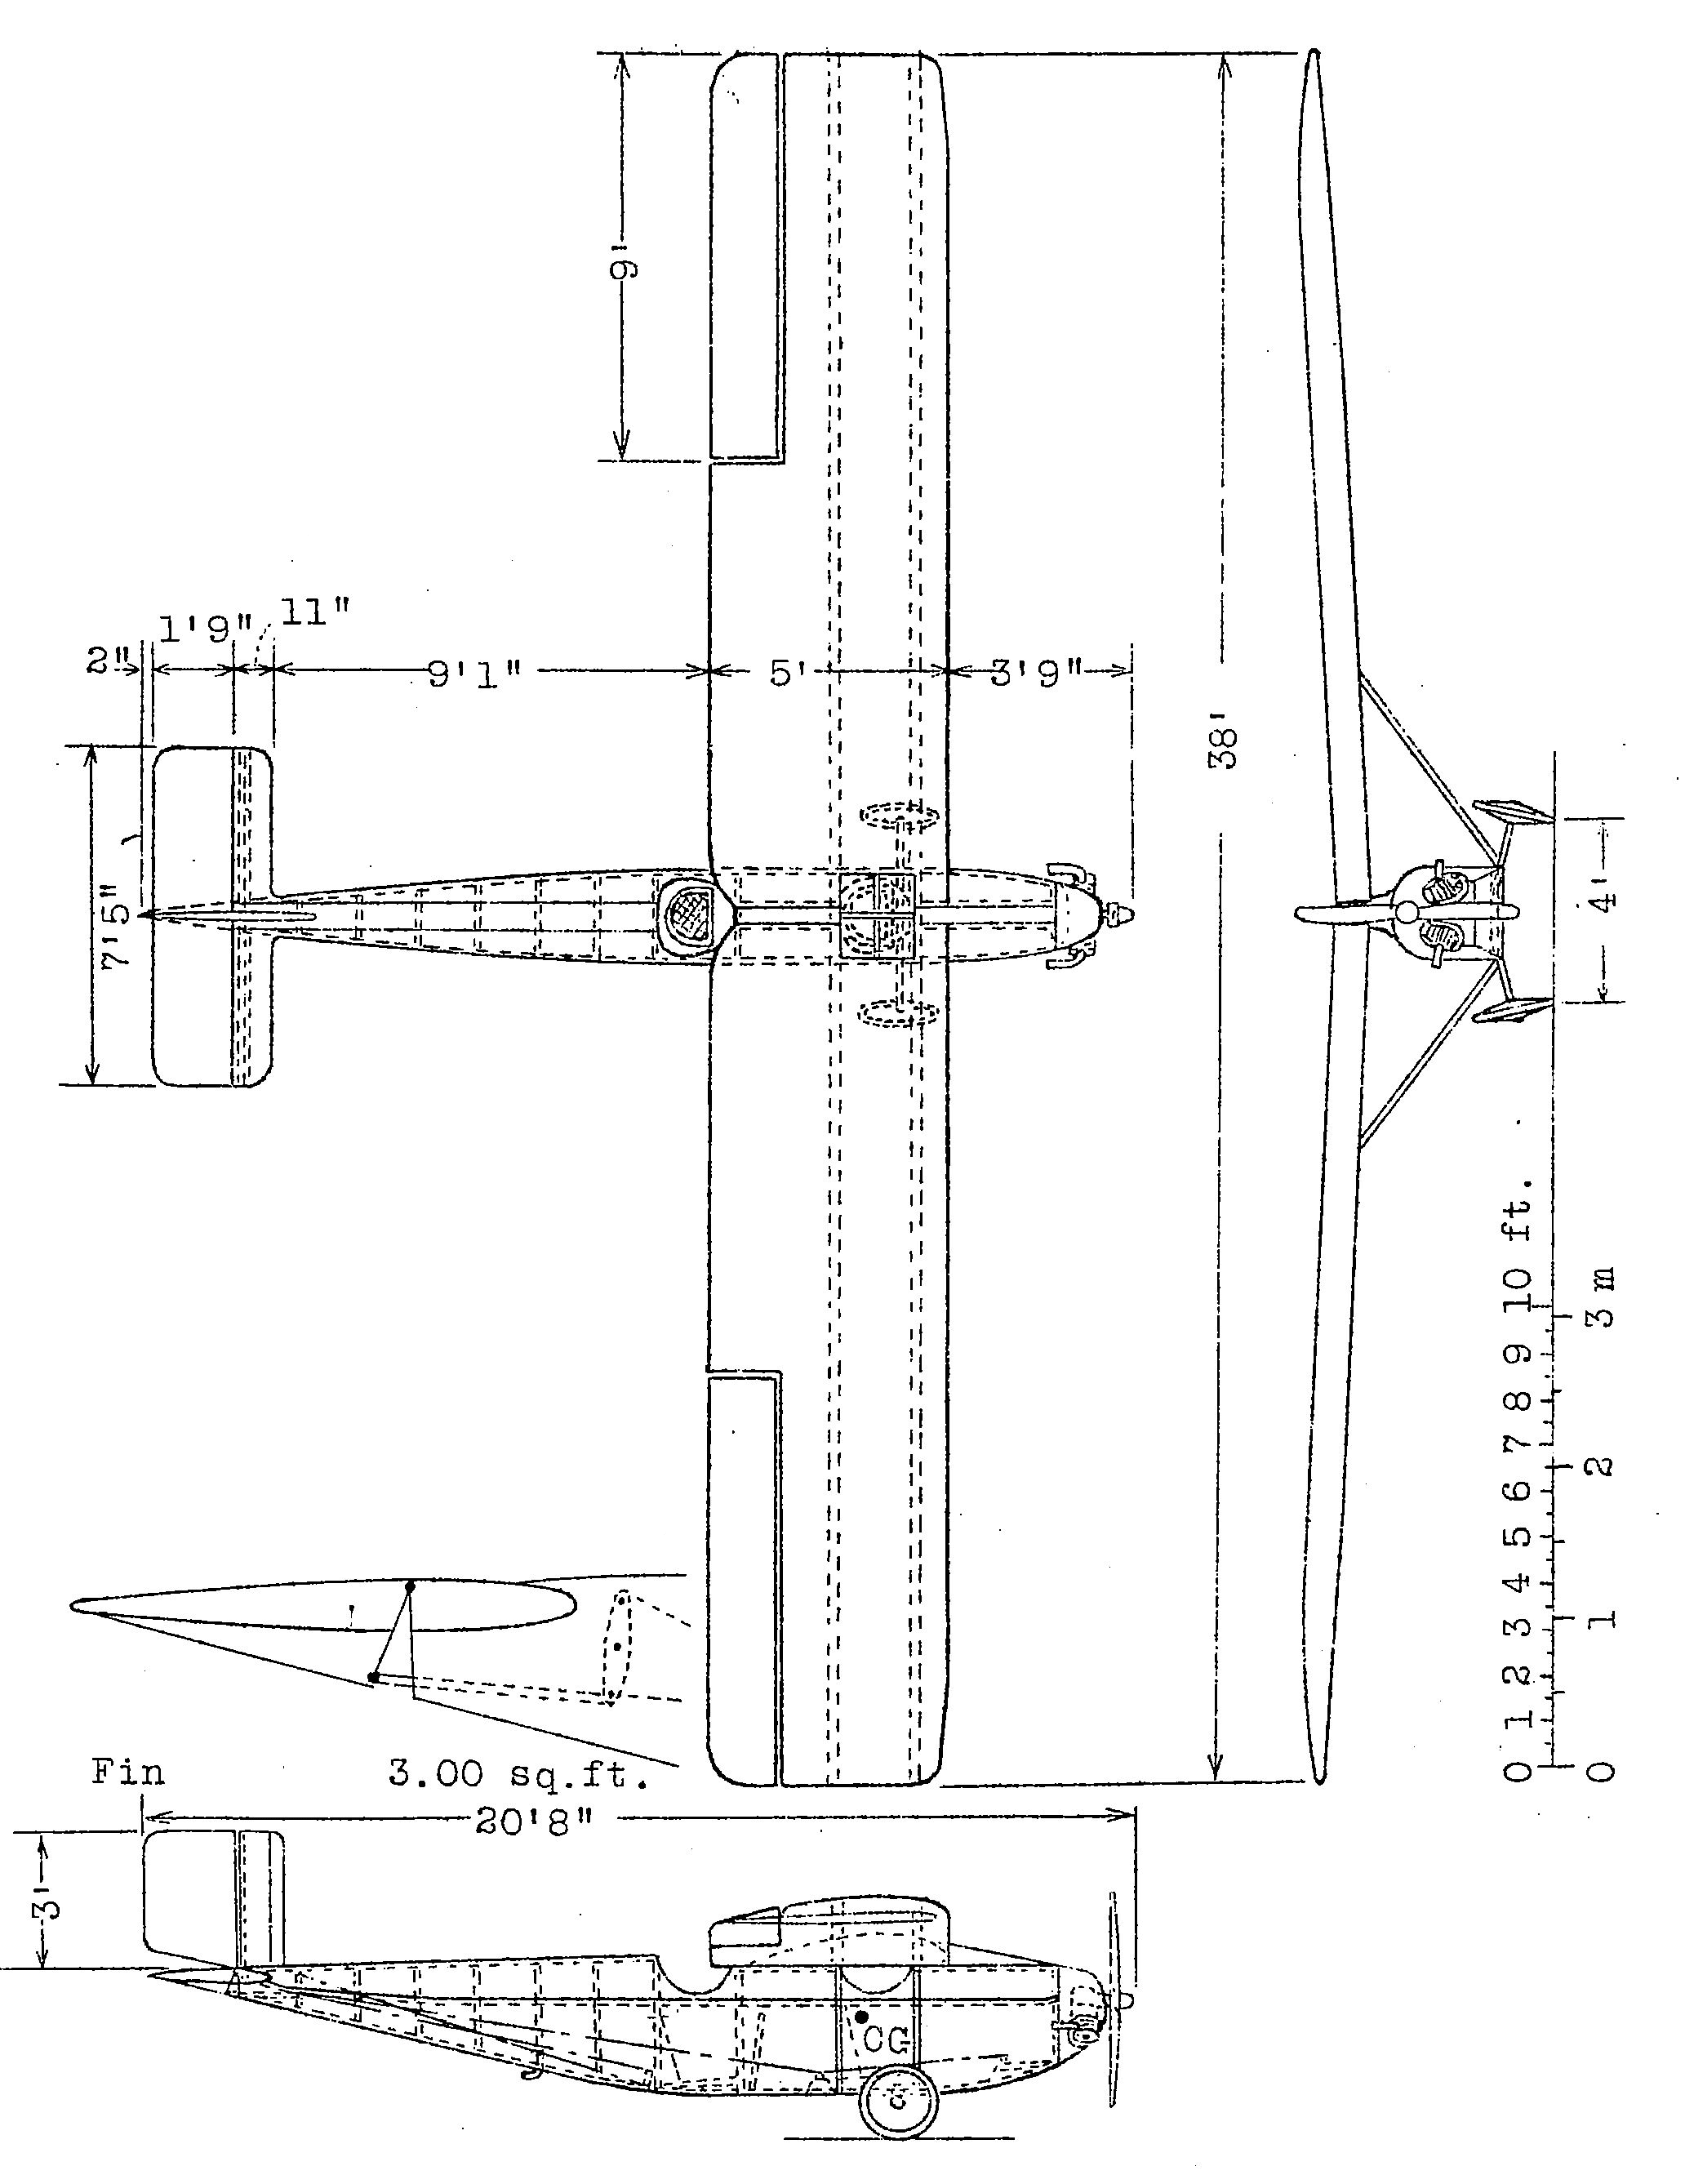 ANEC II blueprint